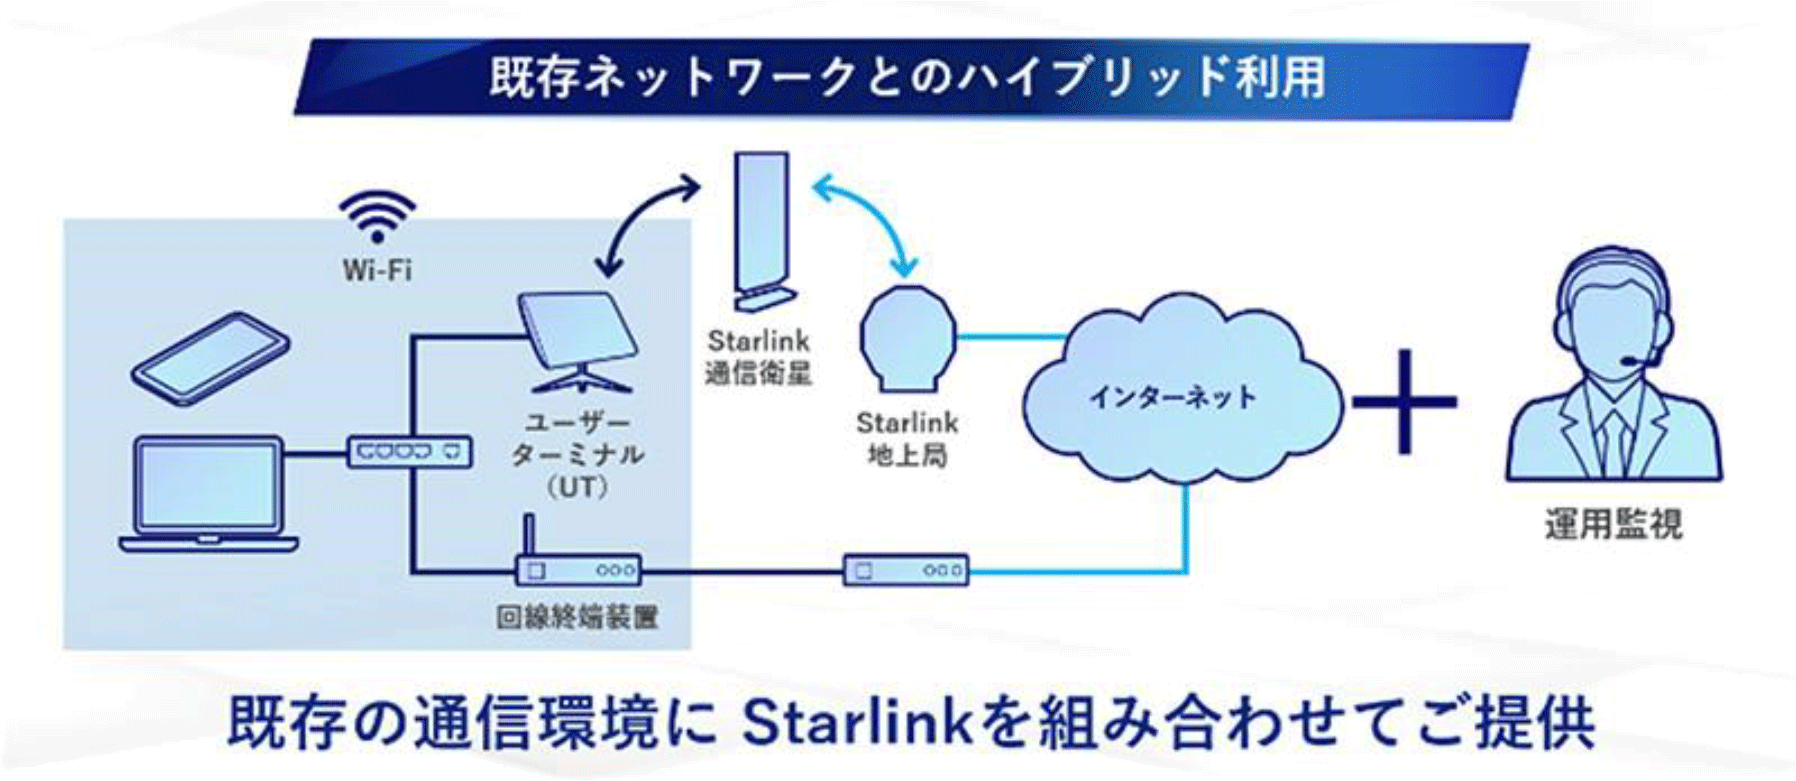 既存ネットワークとのハイブリッド利用のイメージ。既存の通信環境にStarlinkを組み合わせてご提供いたします。